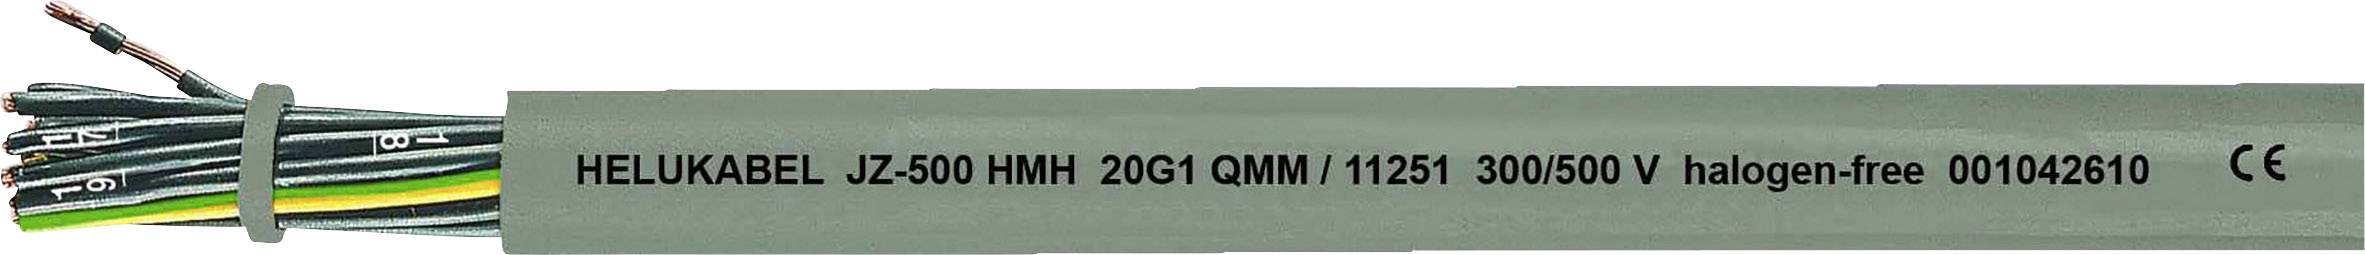 HELUKABEL JZ-500 HMH Steuerleitung 5 G 2.50 mm² Grau 11280-1000 1000 m